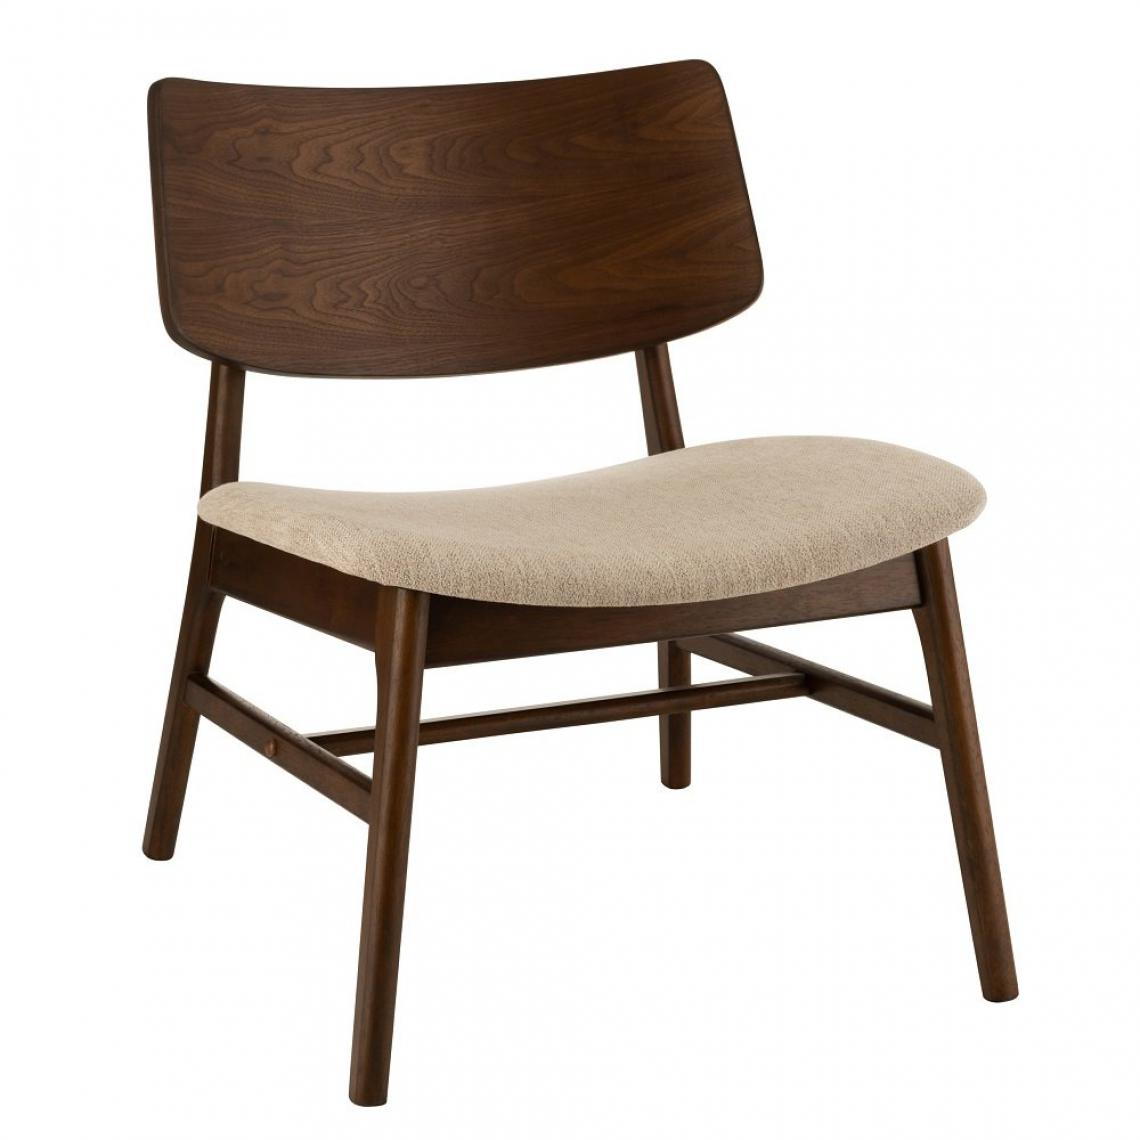 Inside 75 - Chaise lounge vintage KENU brun et beige en bois hévéa. - Chaises